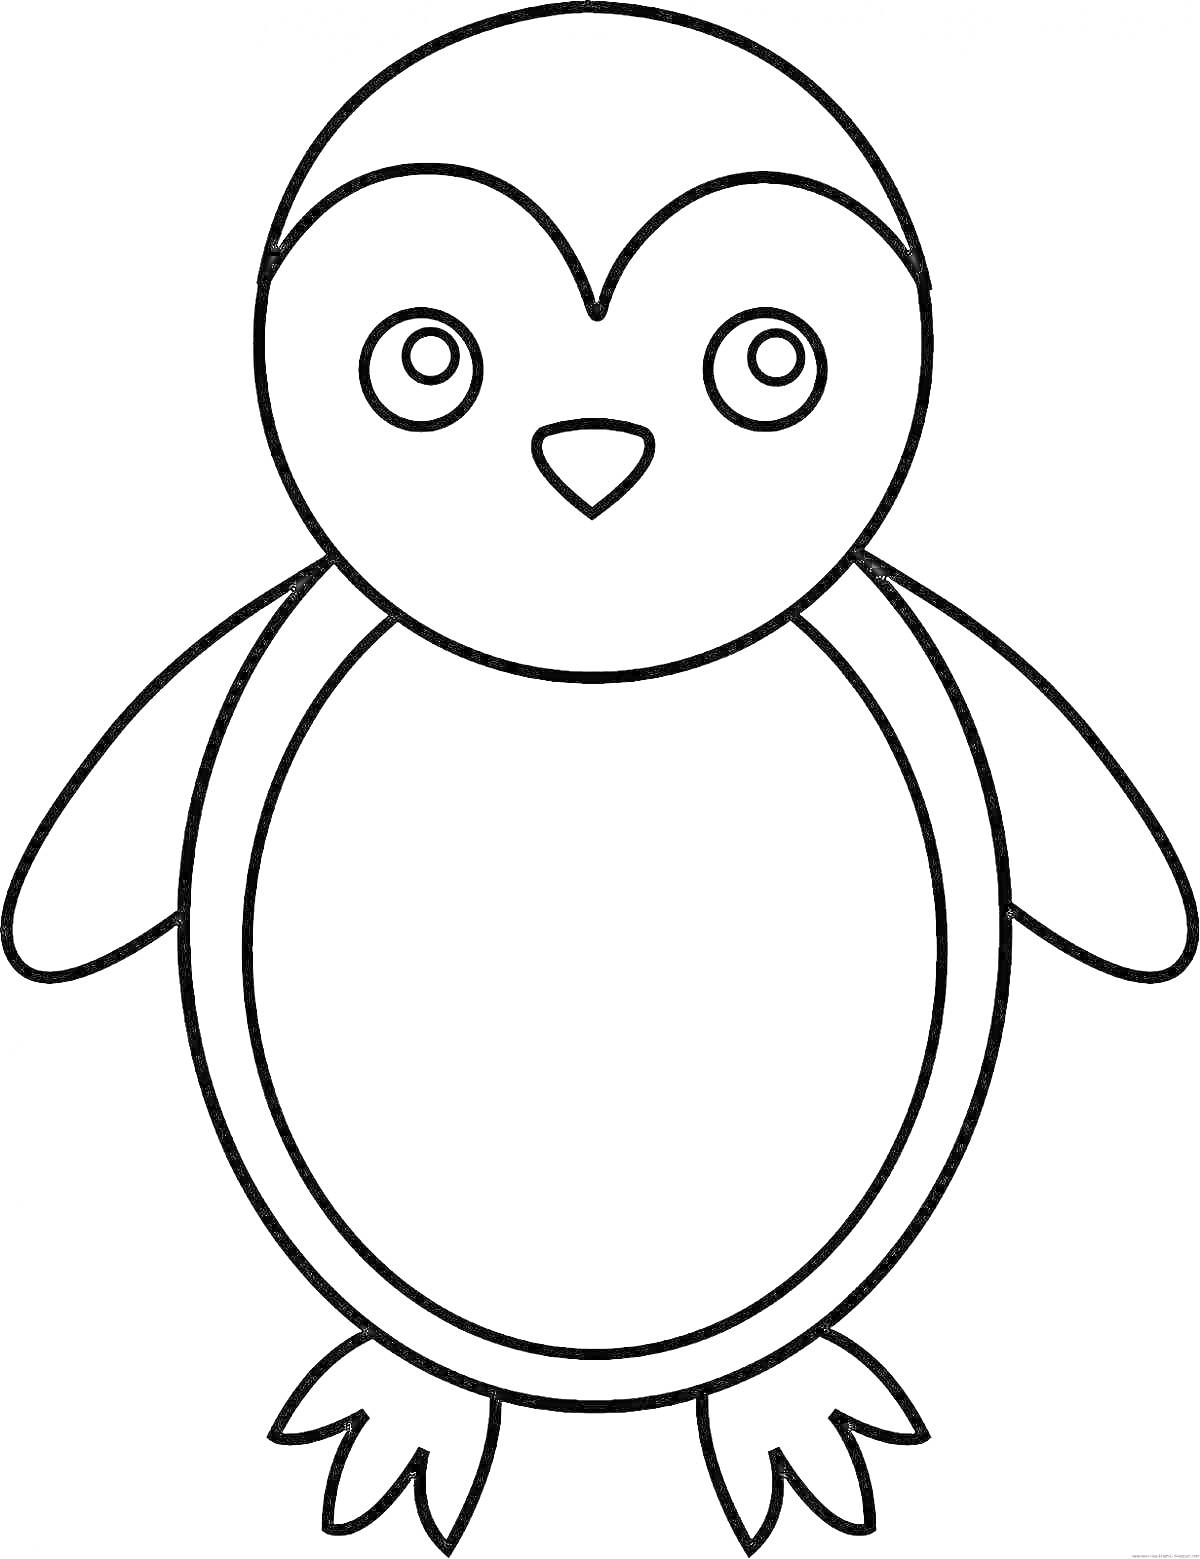 Раскраска Раскраска пингвина для малышей: контур пингвина с глазами, клювом, крыльями и лапками